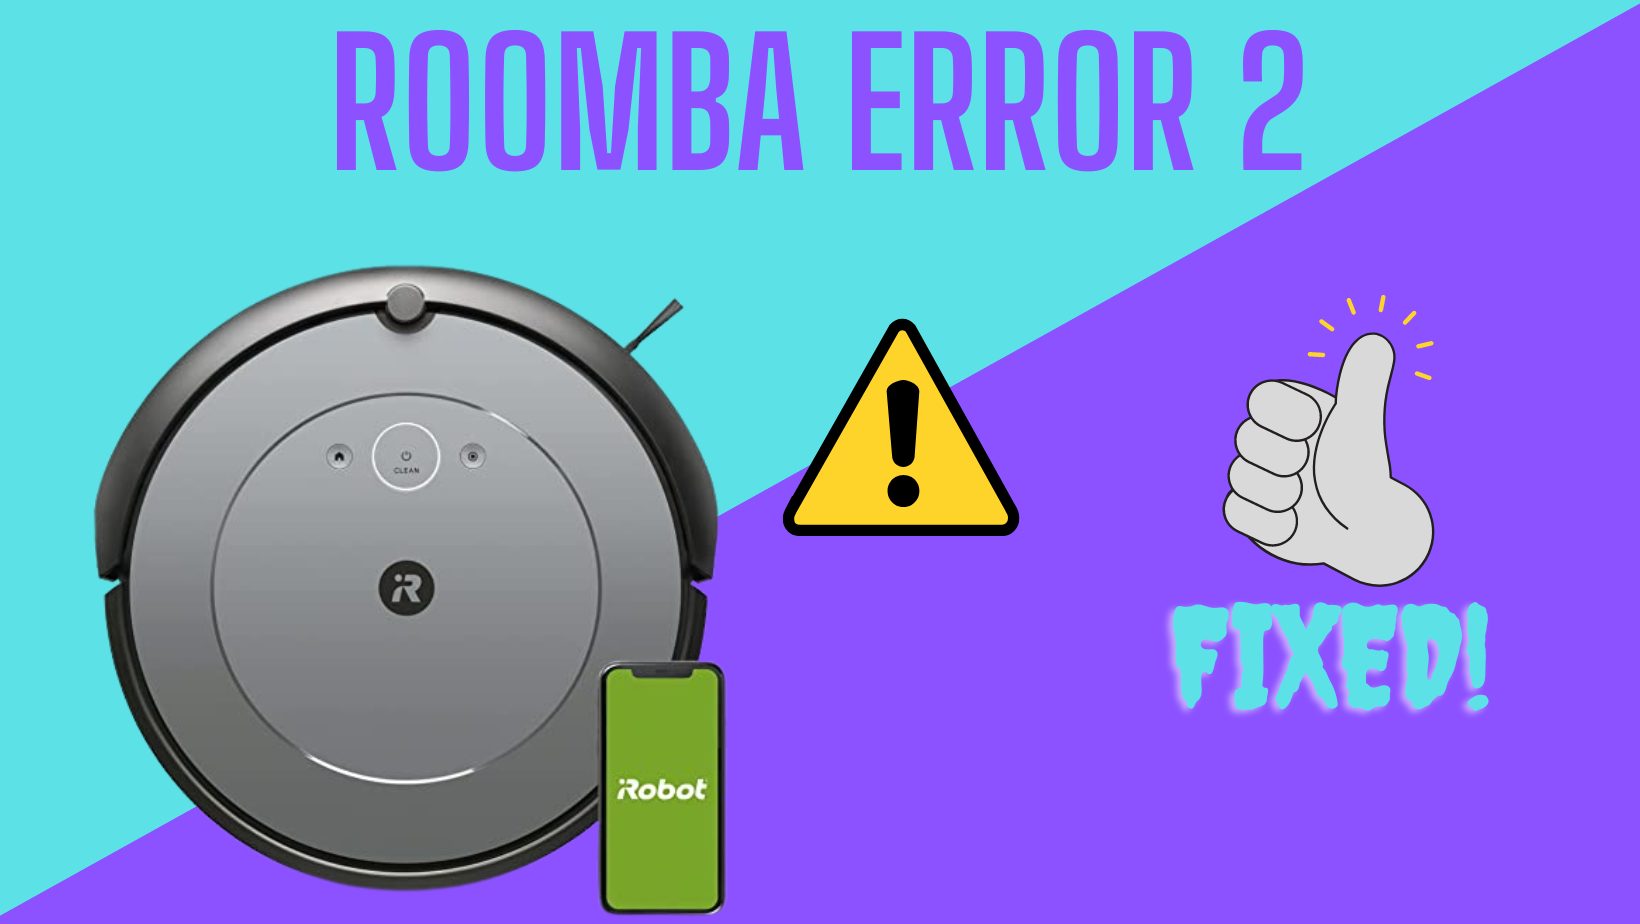 Roomba Error 2